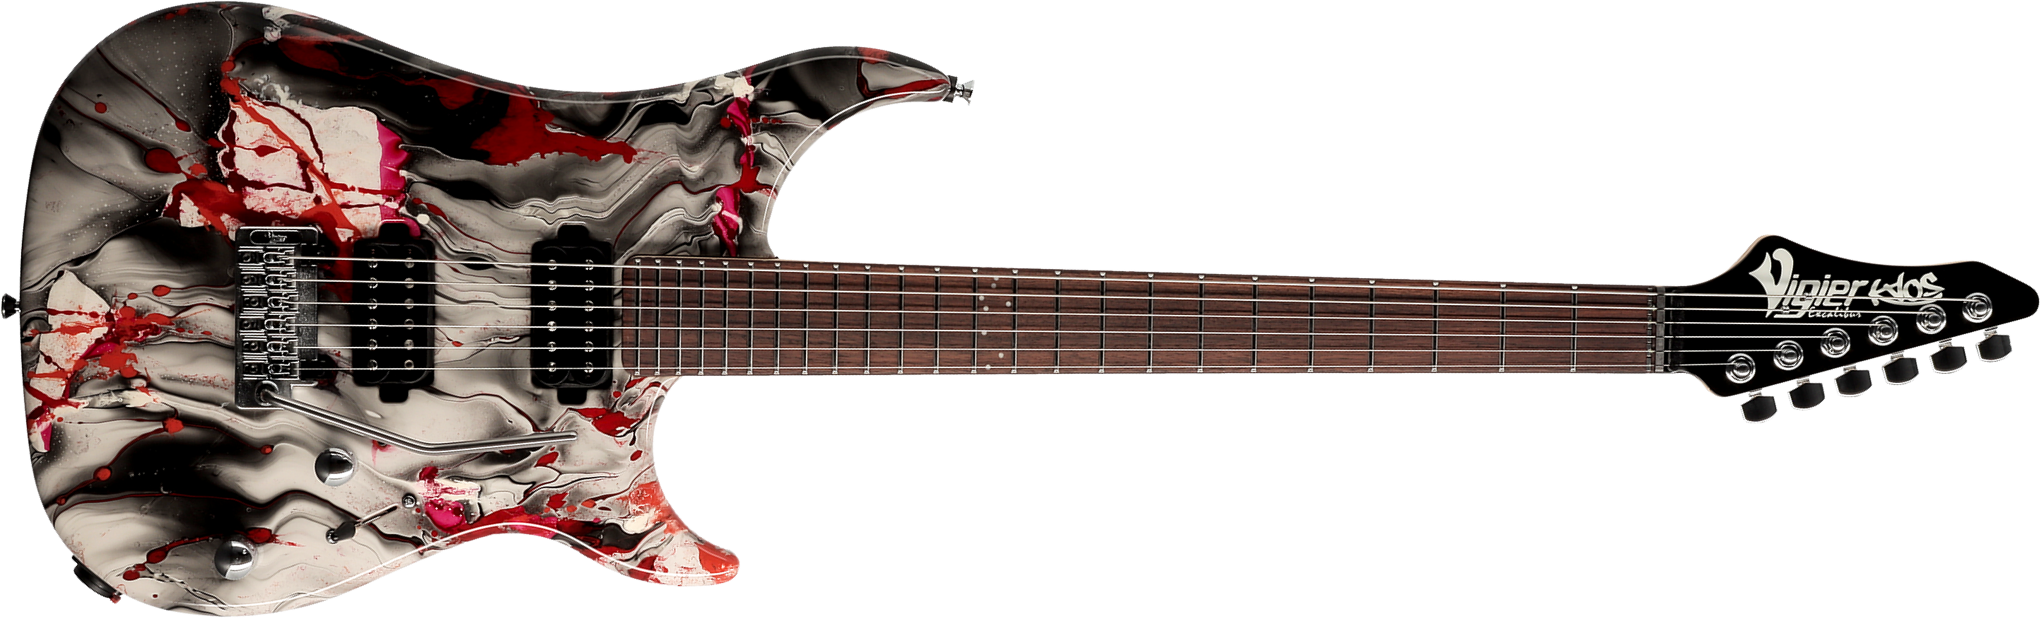 Vigier Excalibur Kaos 2h Trem Rw - Rock Art Chrome Black Red - Guitare Électrique Forme Str - Main picture